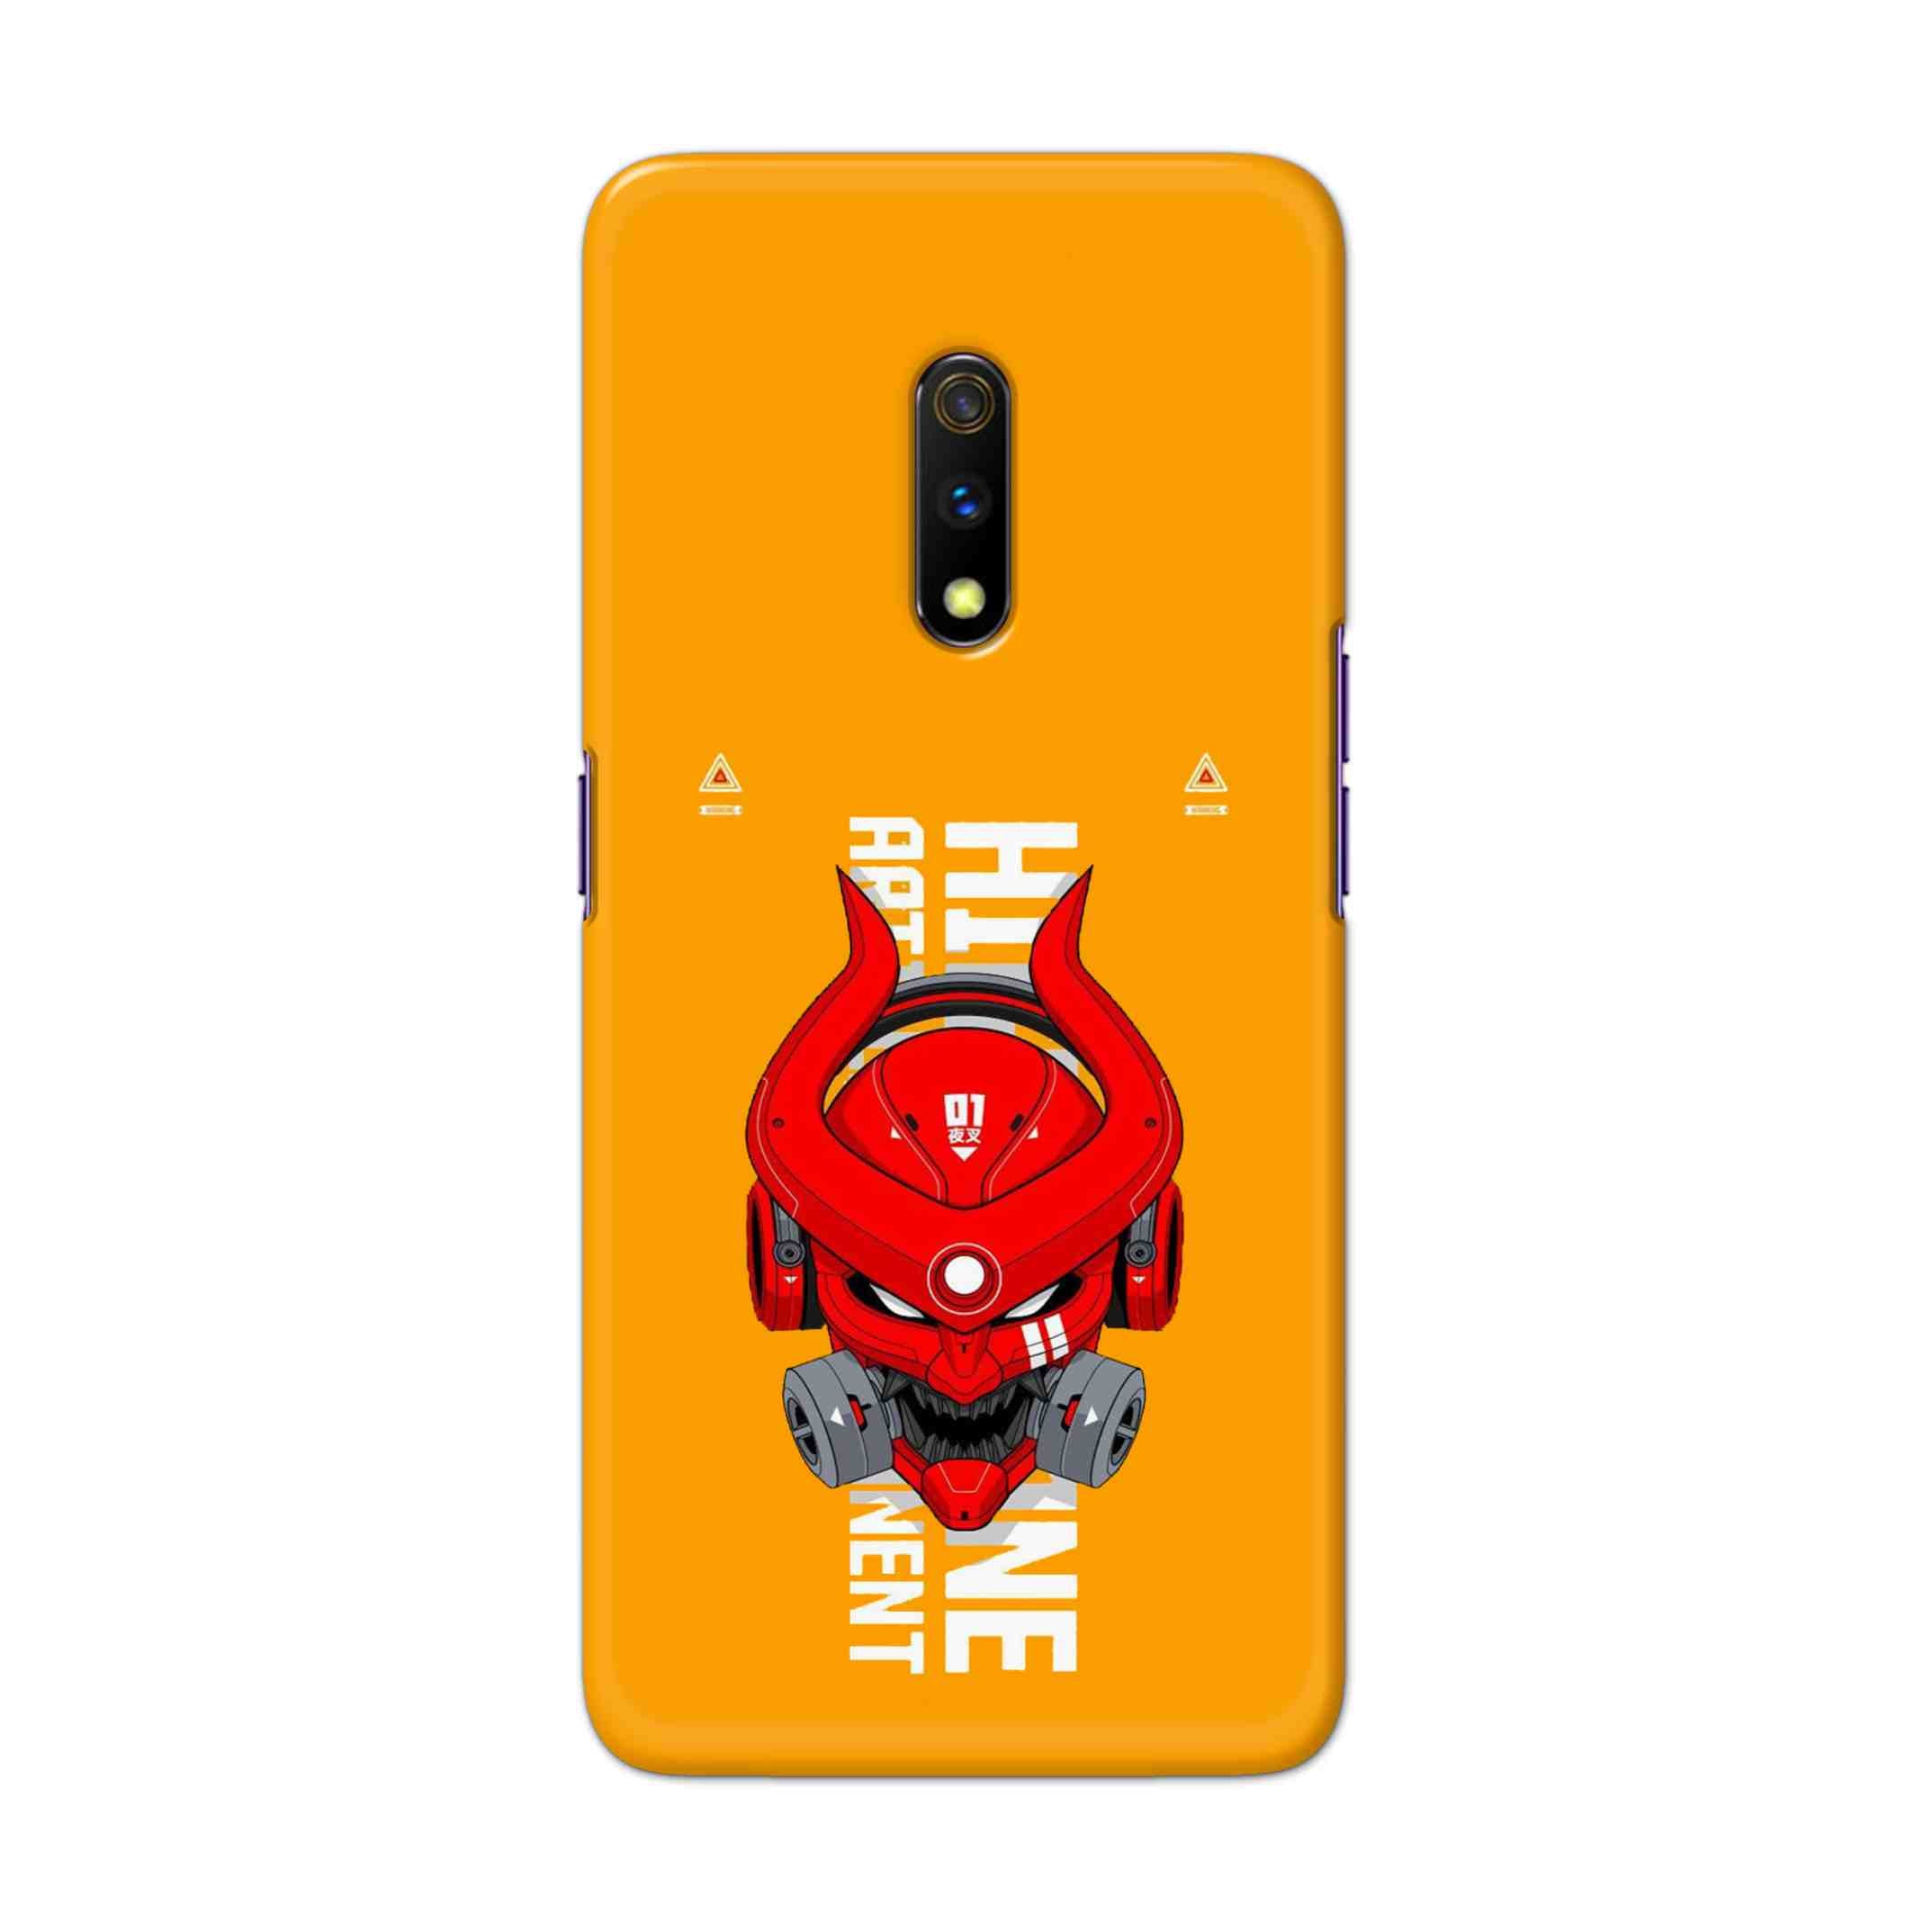 Buy Bull Skull Hard Back Mobile Phone Case Cover For Oppo Realme X Online